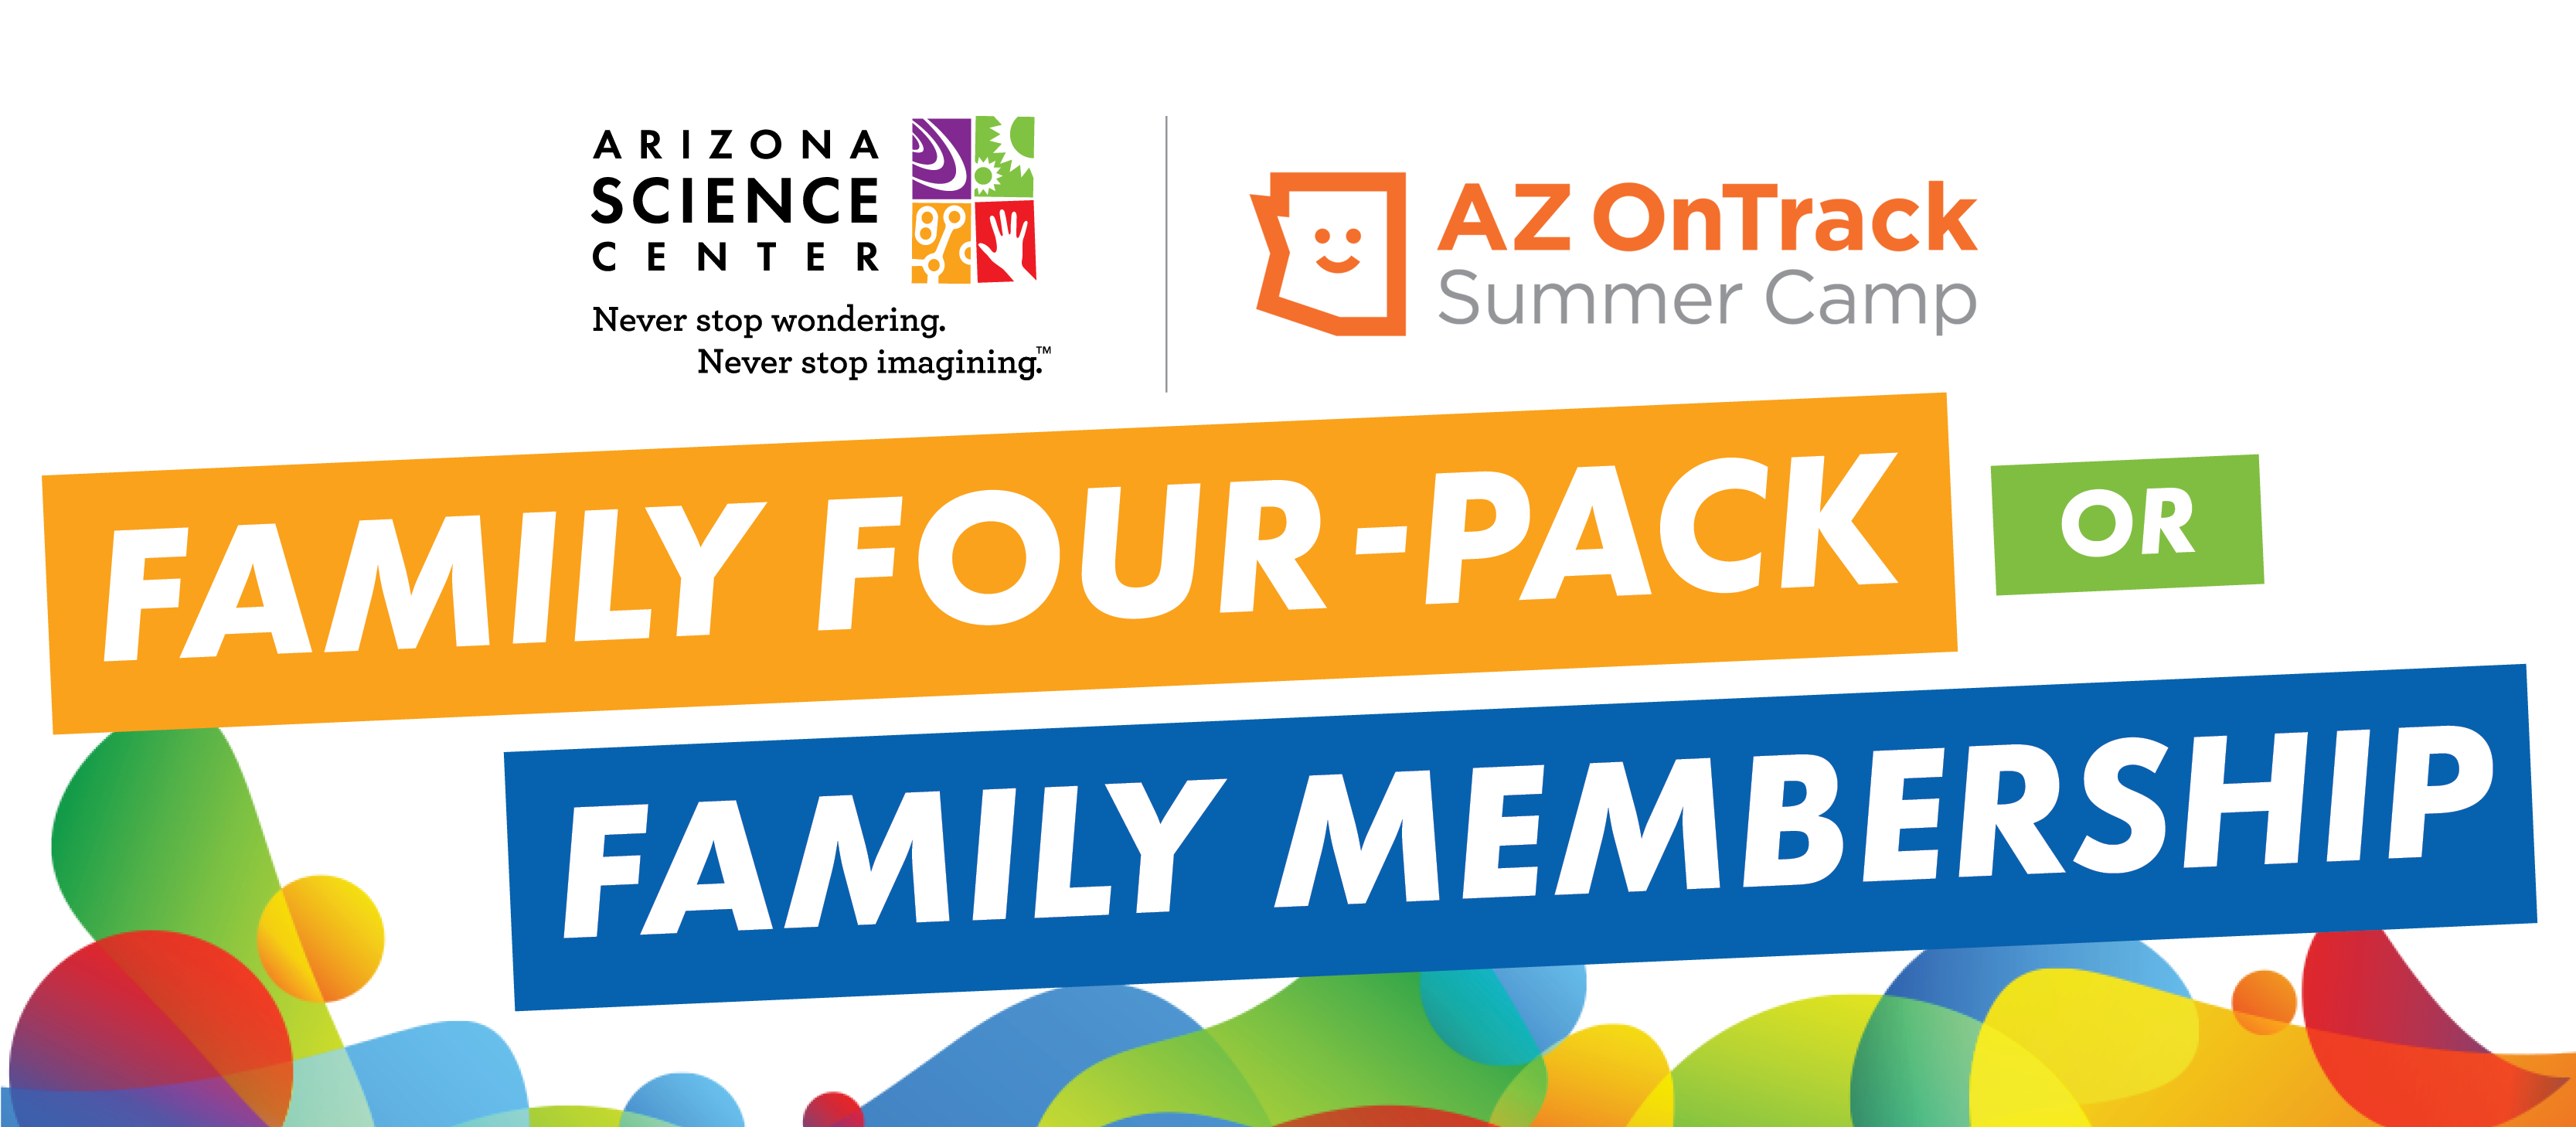 AZ OnTrack Family Four Pack or Family Membership